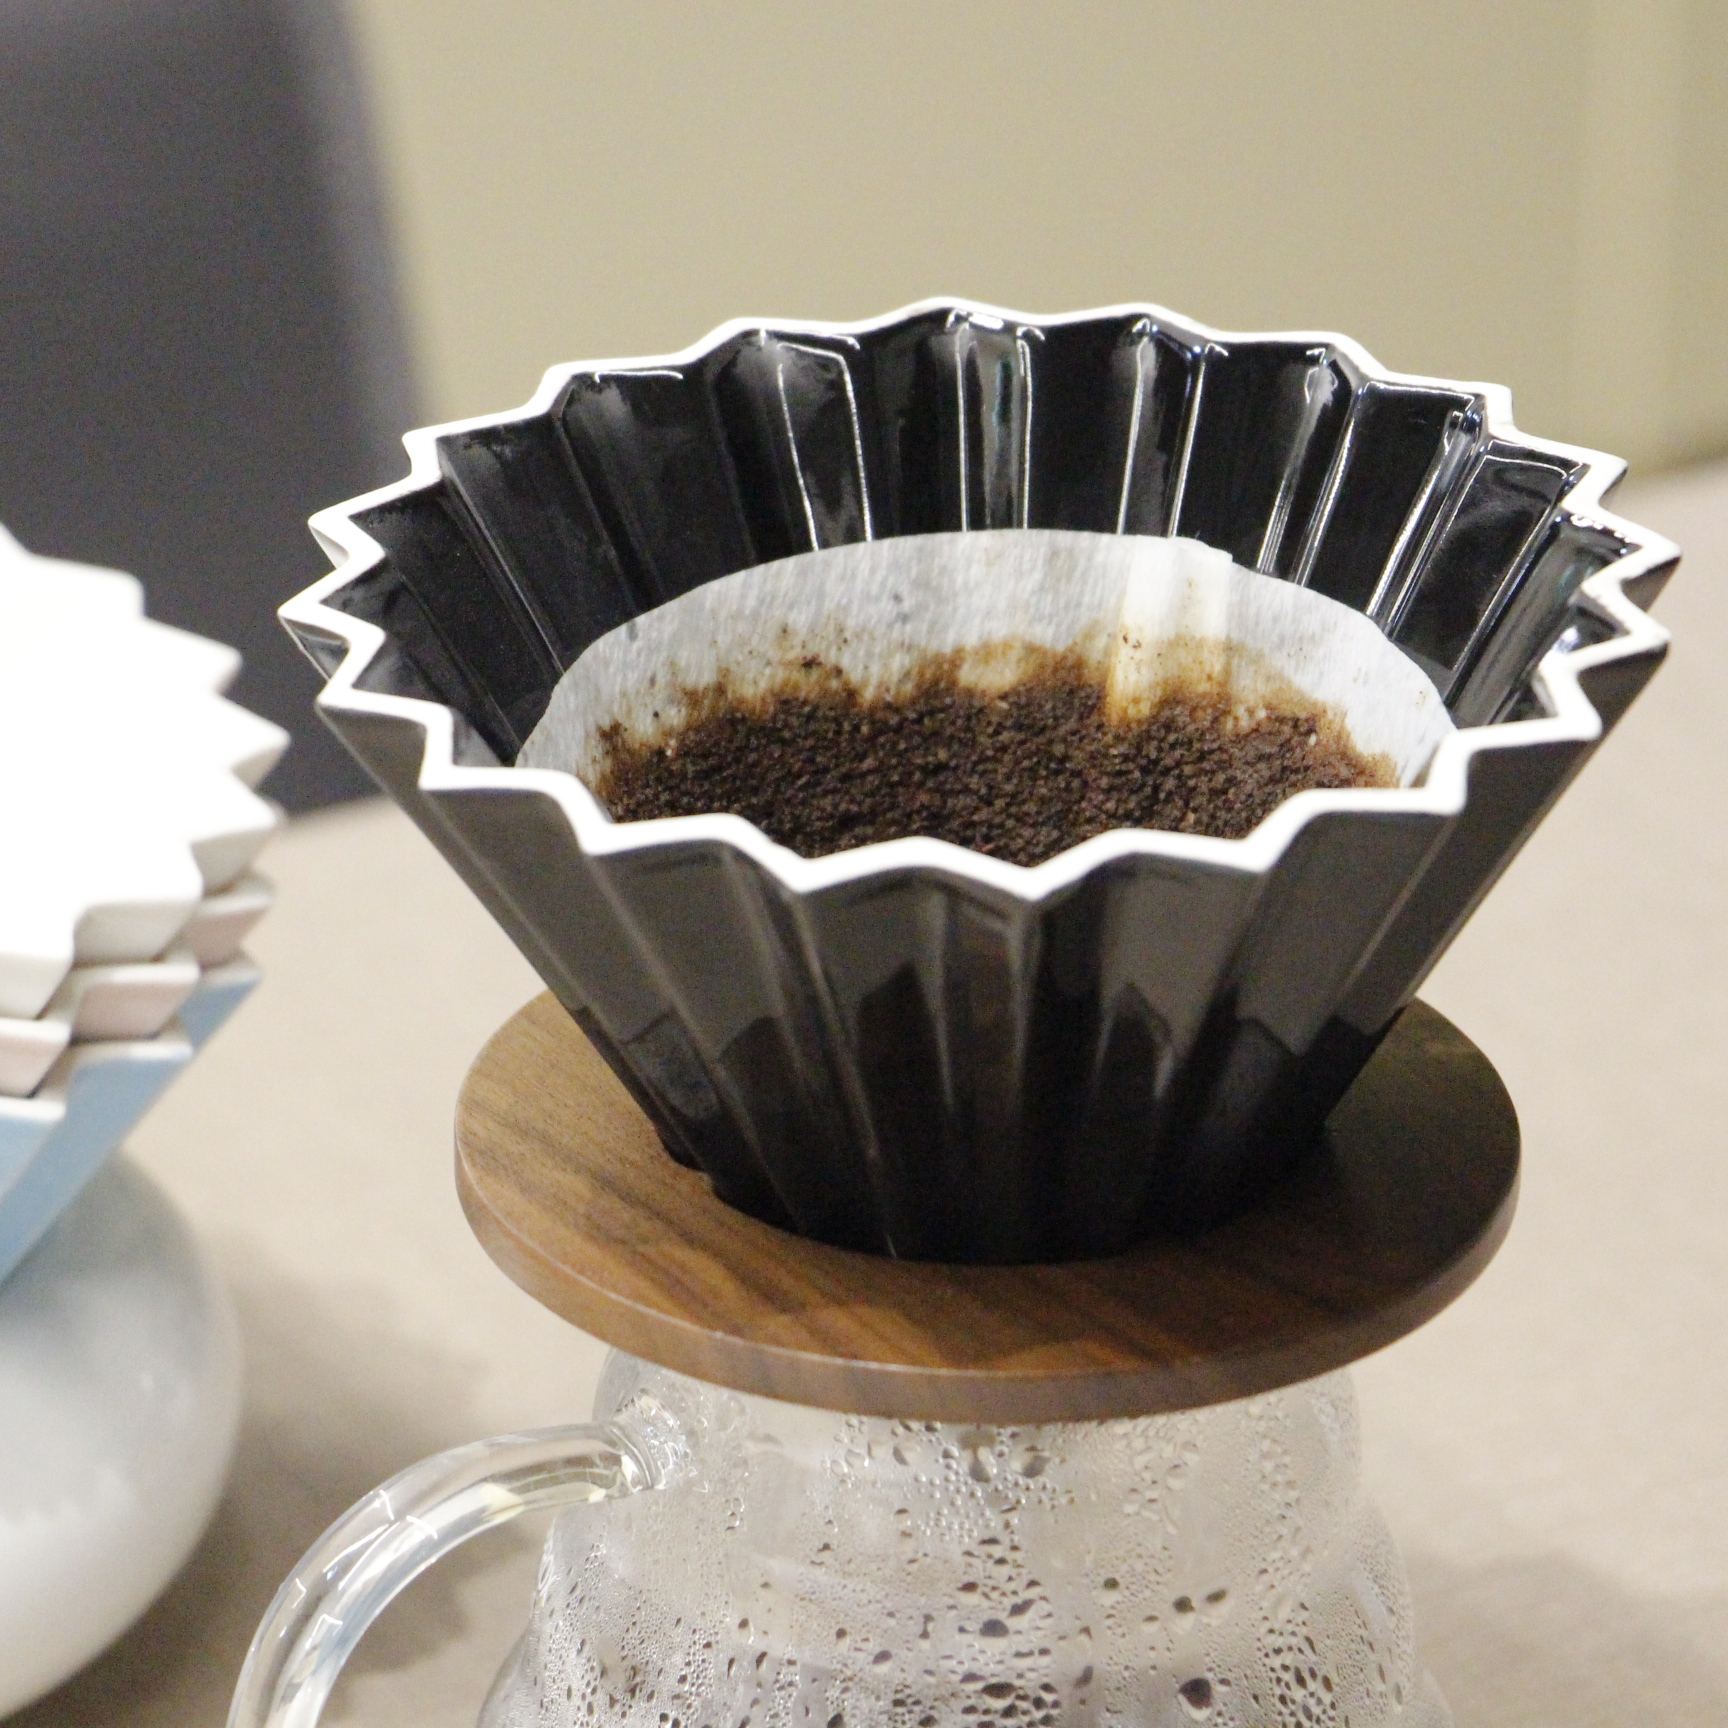 El V60 Origami es mucho más que un gotero de café, es una forma de expresión. Su diseño floral en porcelana no solo agrega estilo a tu rutina, sino que también mejora la extracción de sabores. Prepárate para disfrutar de la excelencia en cada taza.